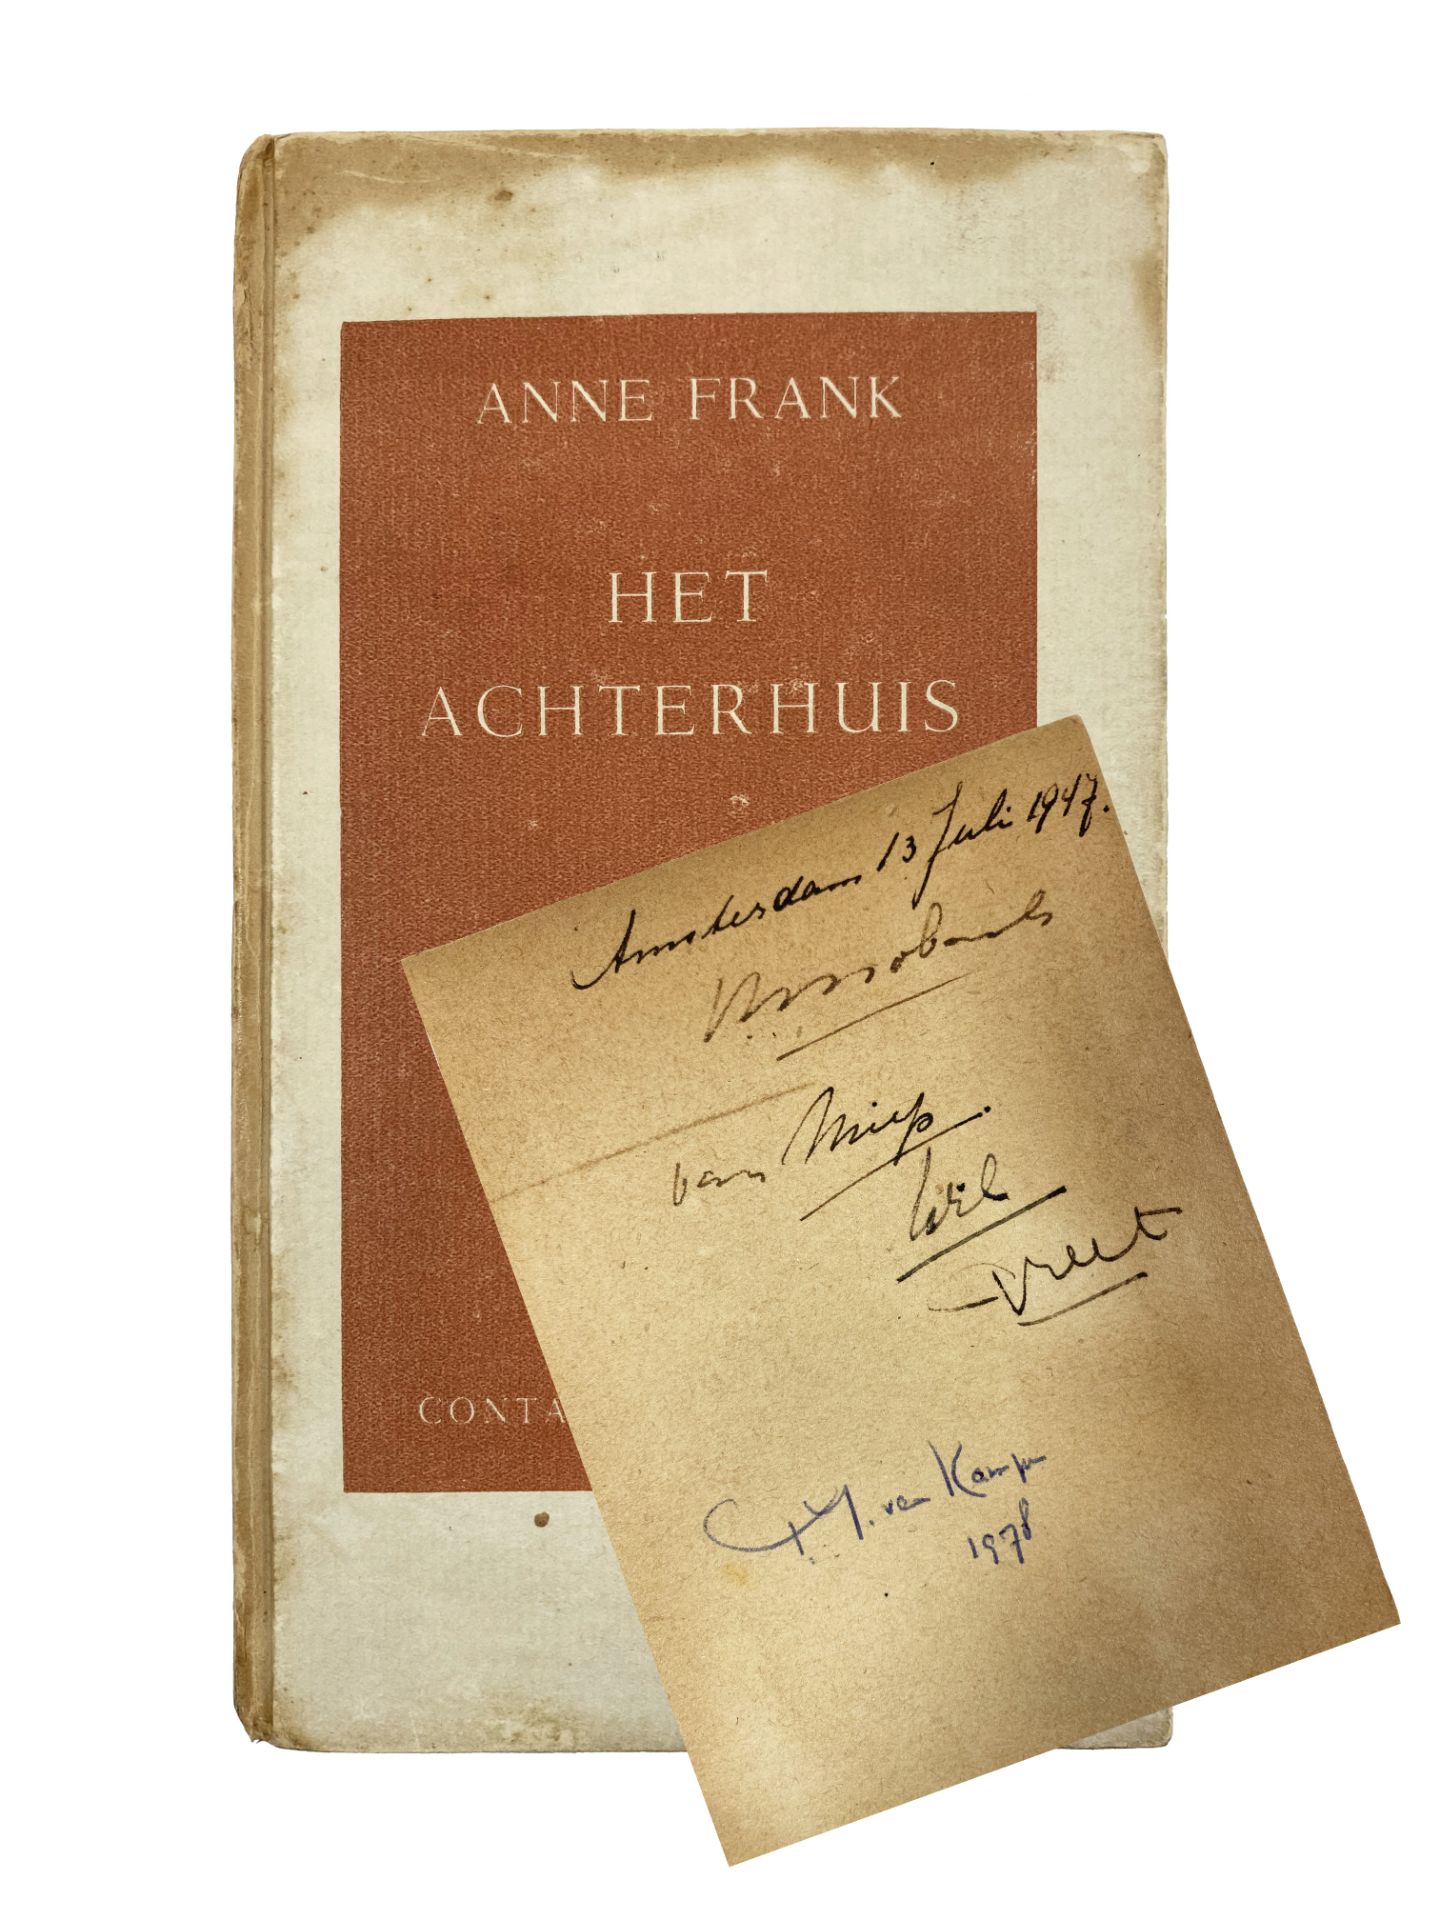 FRANK, A. Het Achterhuis. Dagboekbrieven van 12 juni 1942 - 1 Aug. 1944